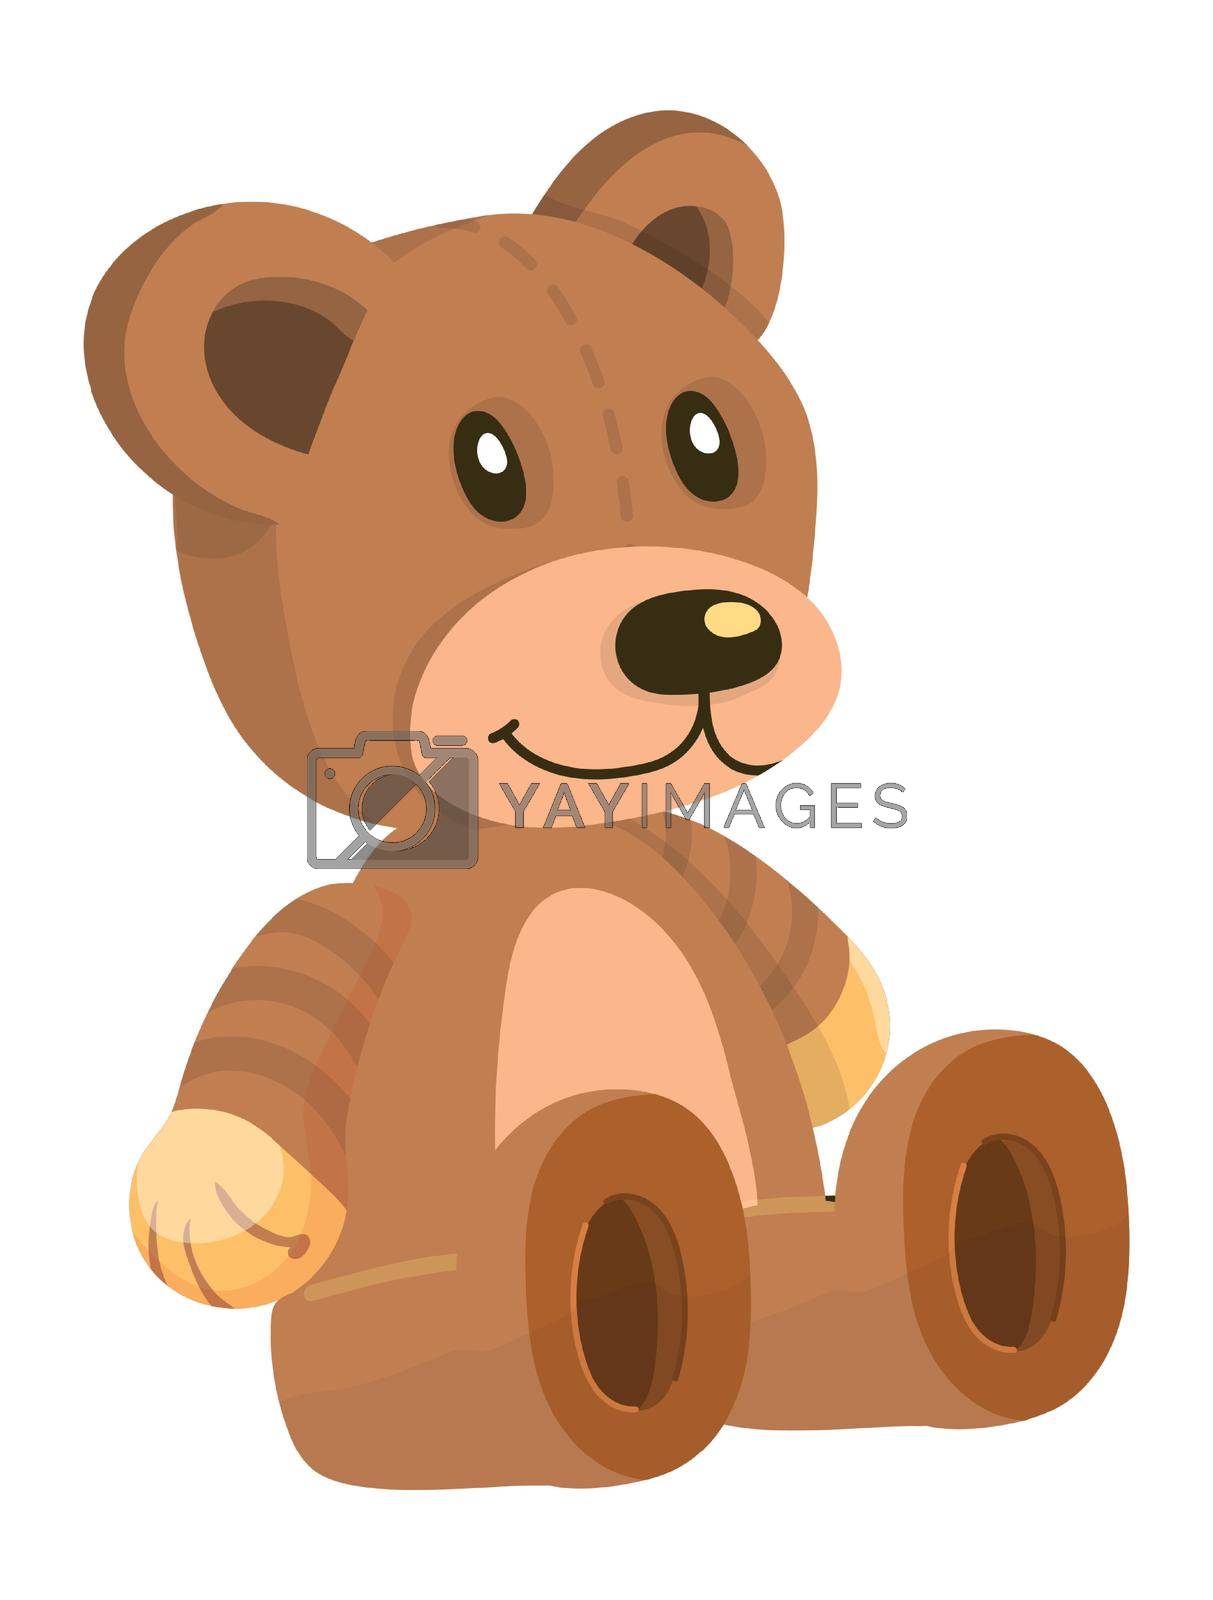 Royalty free image of Cartoon teddy bear. Stuffed soft plush toy by LadadikArt